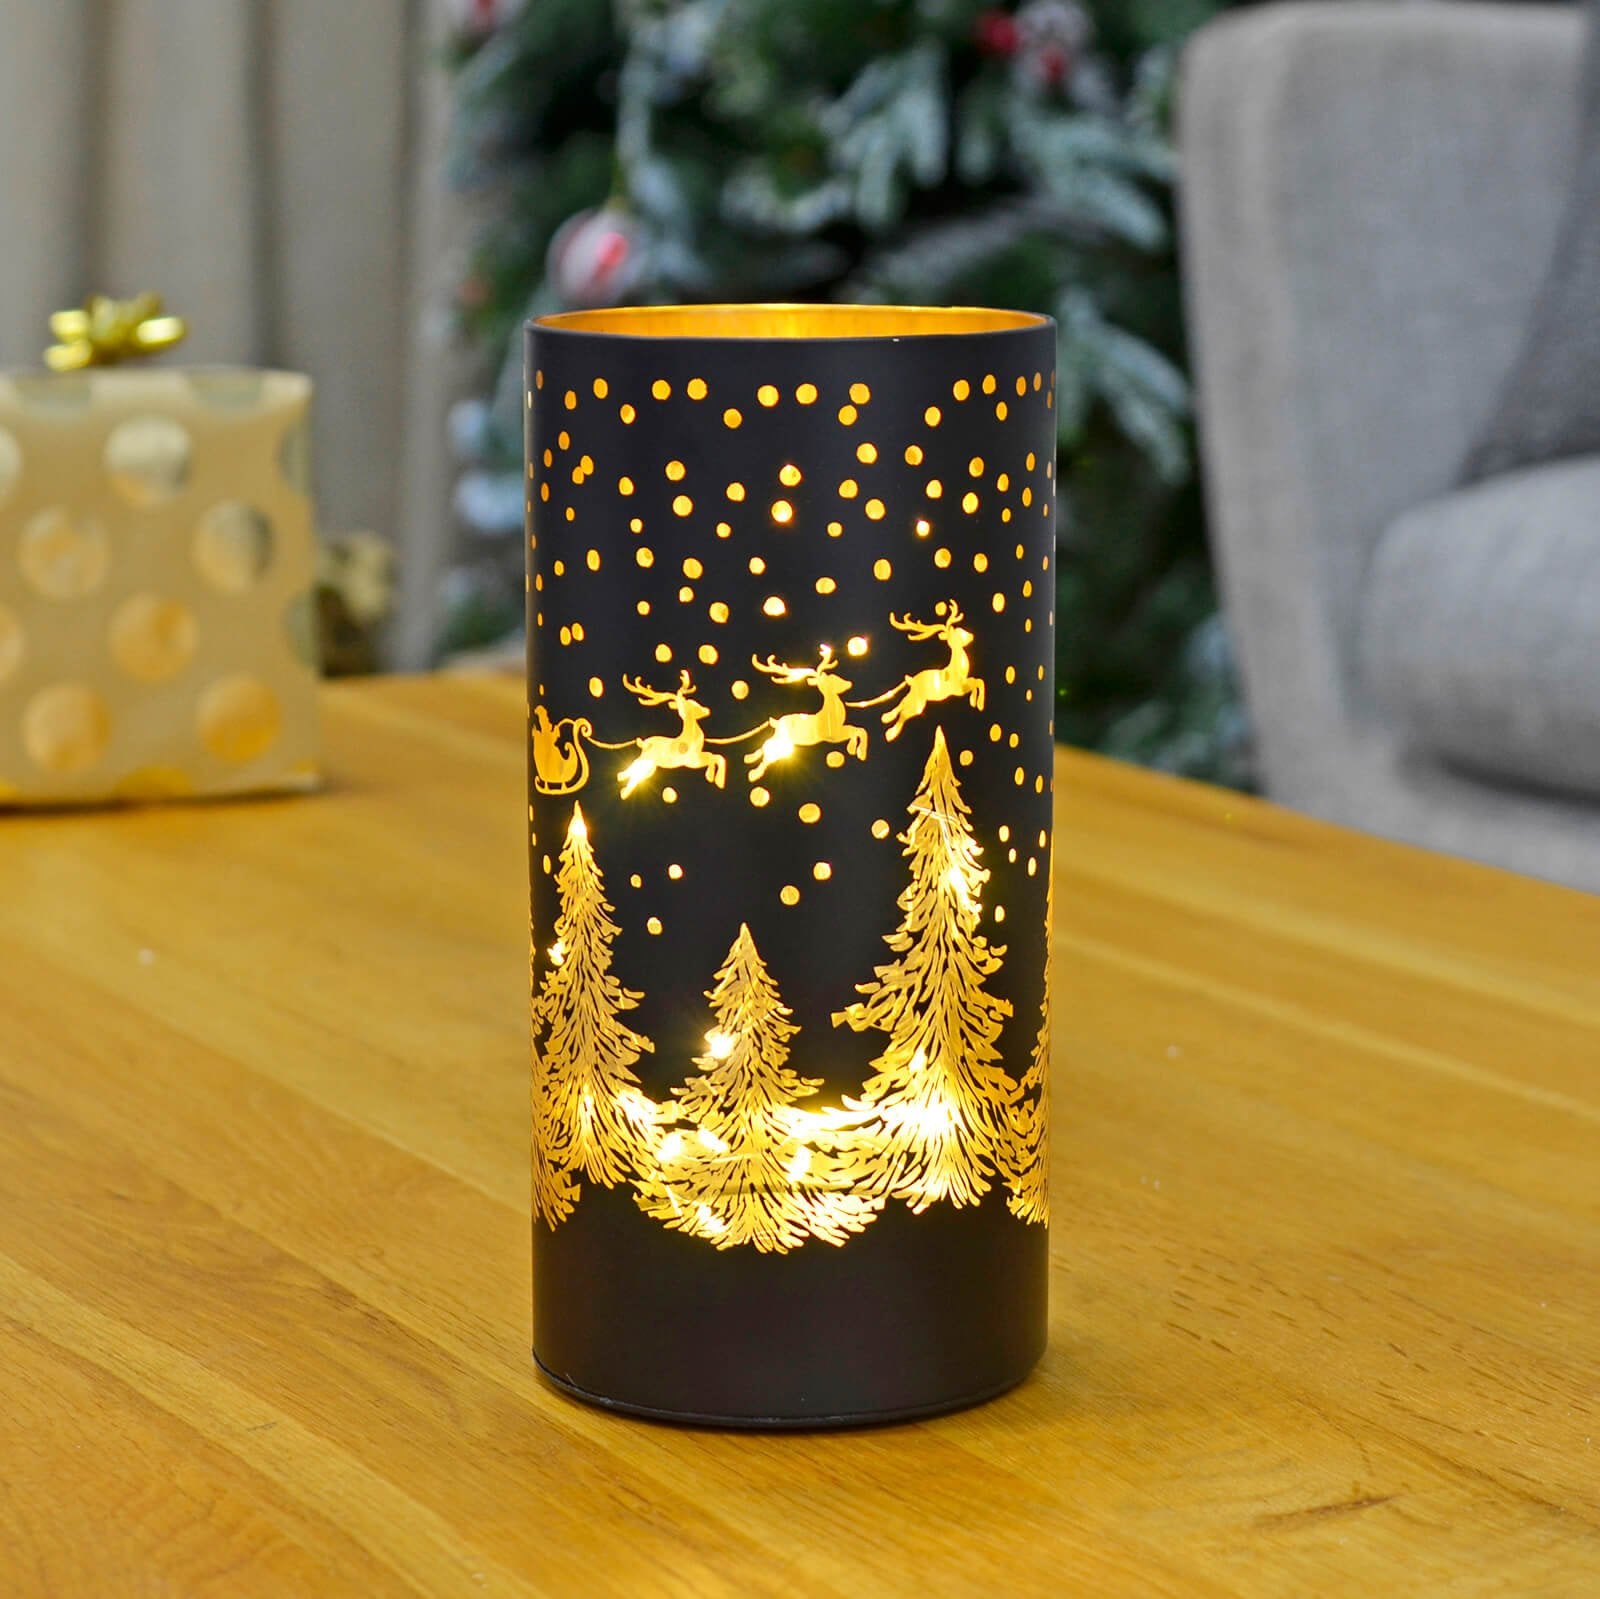 Mr Crimbo Christmas Cylinder Light Black Gold Decoration 20cm - MrCrimbo.co.uk -XS7294 - Santa & Sleigh -Black